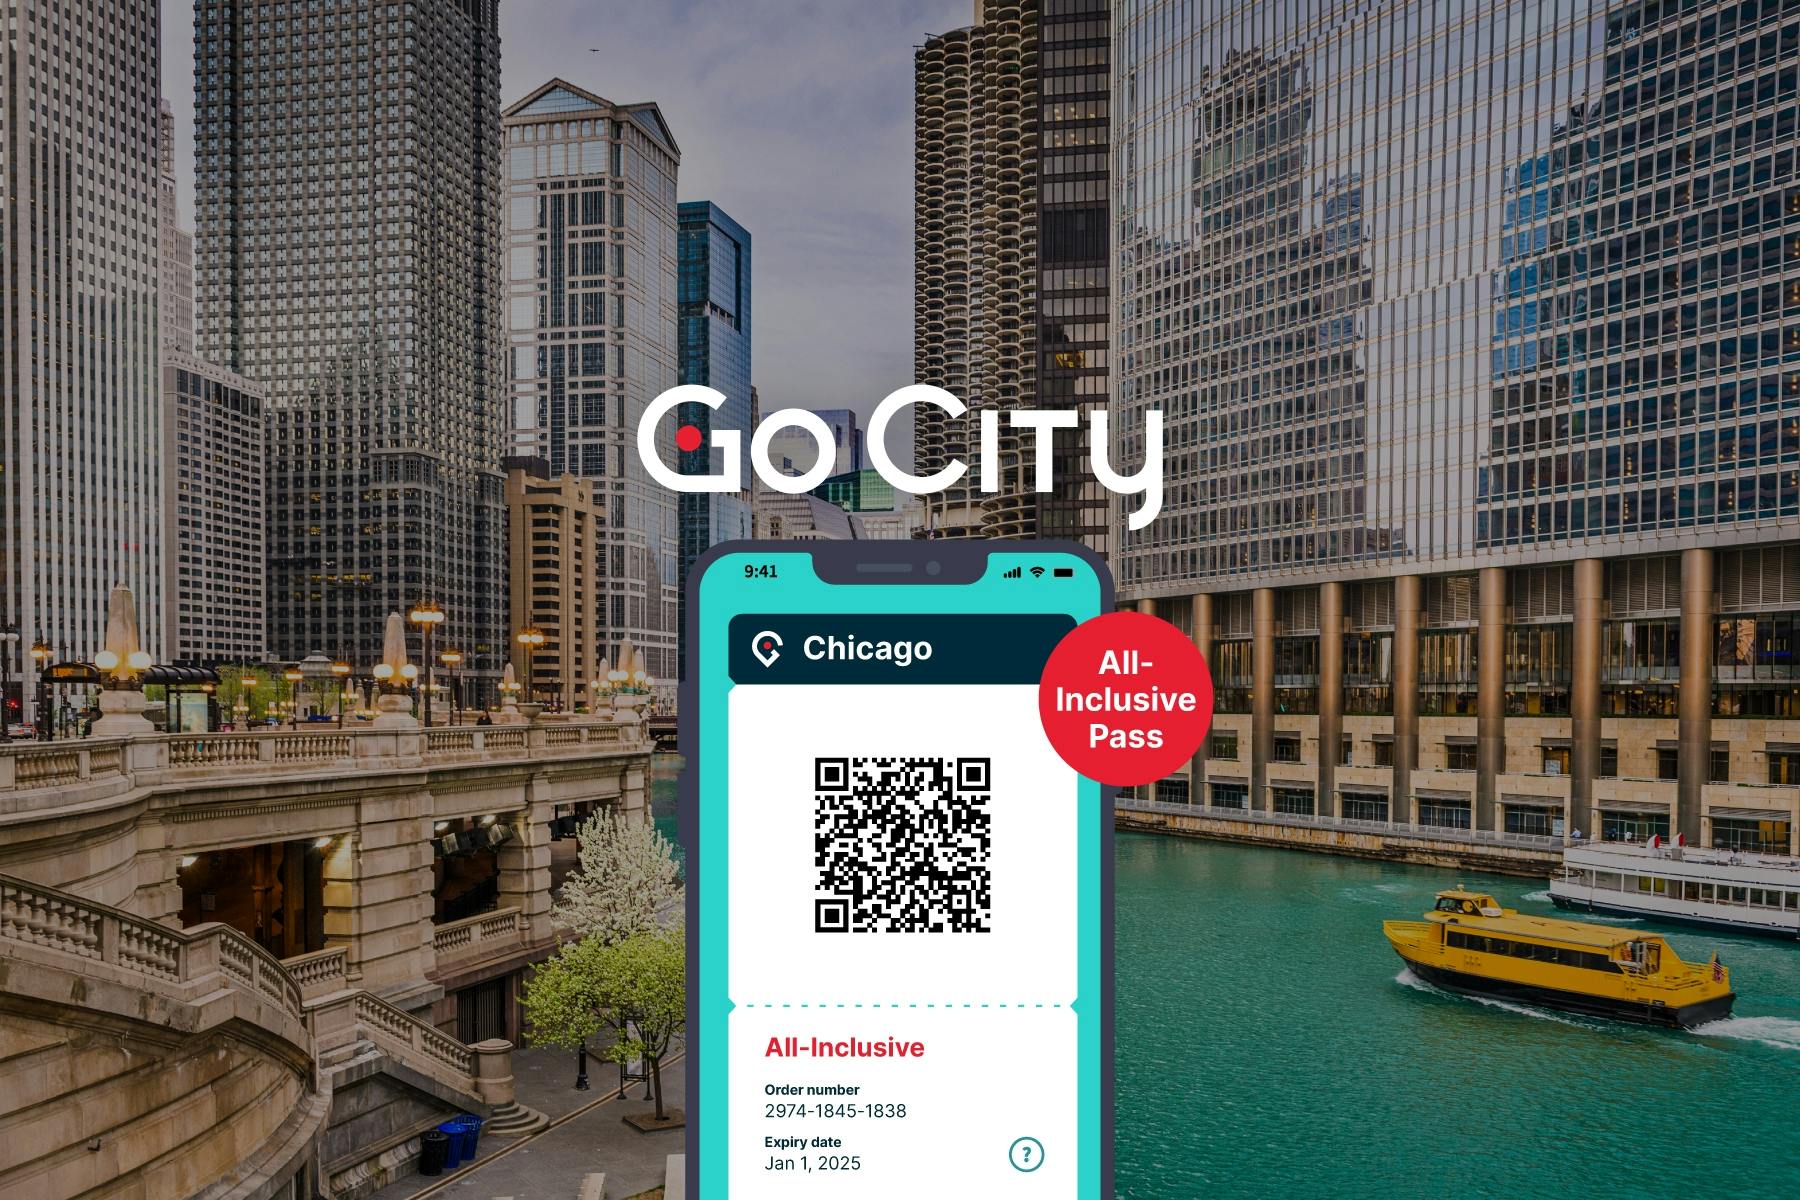 Go City | Passe Chicago com tudo incluído